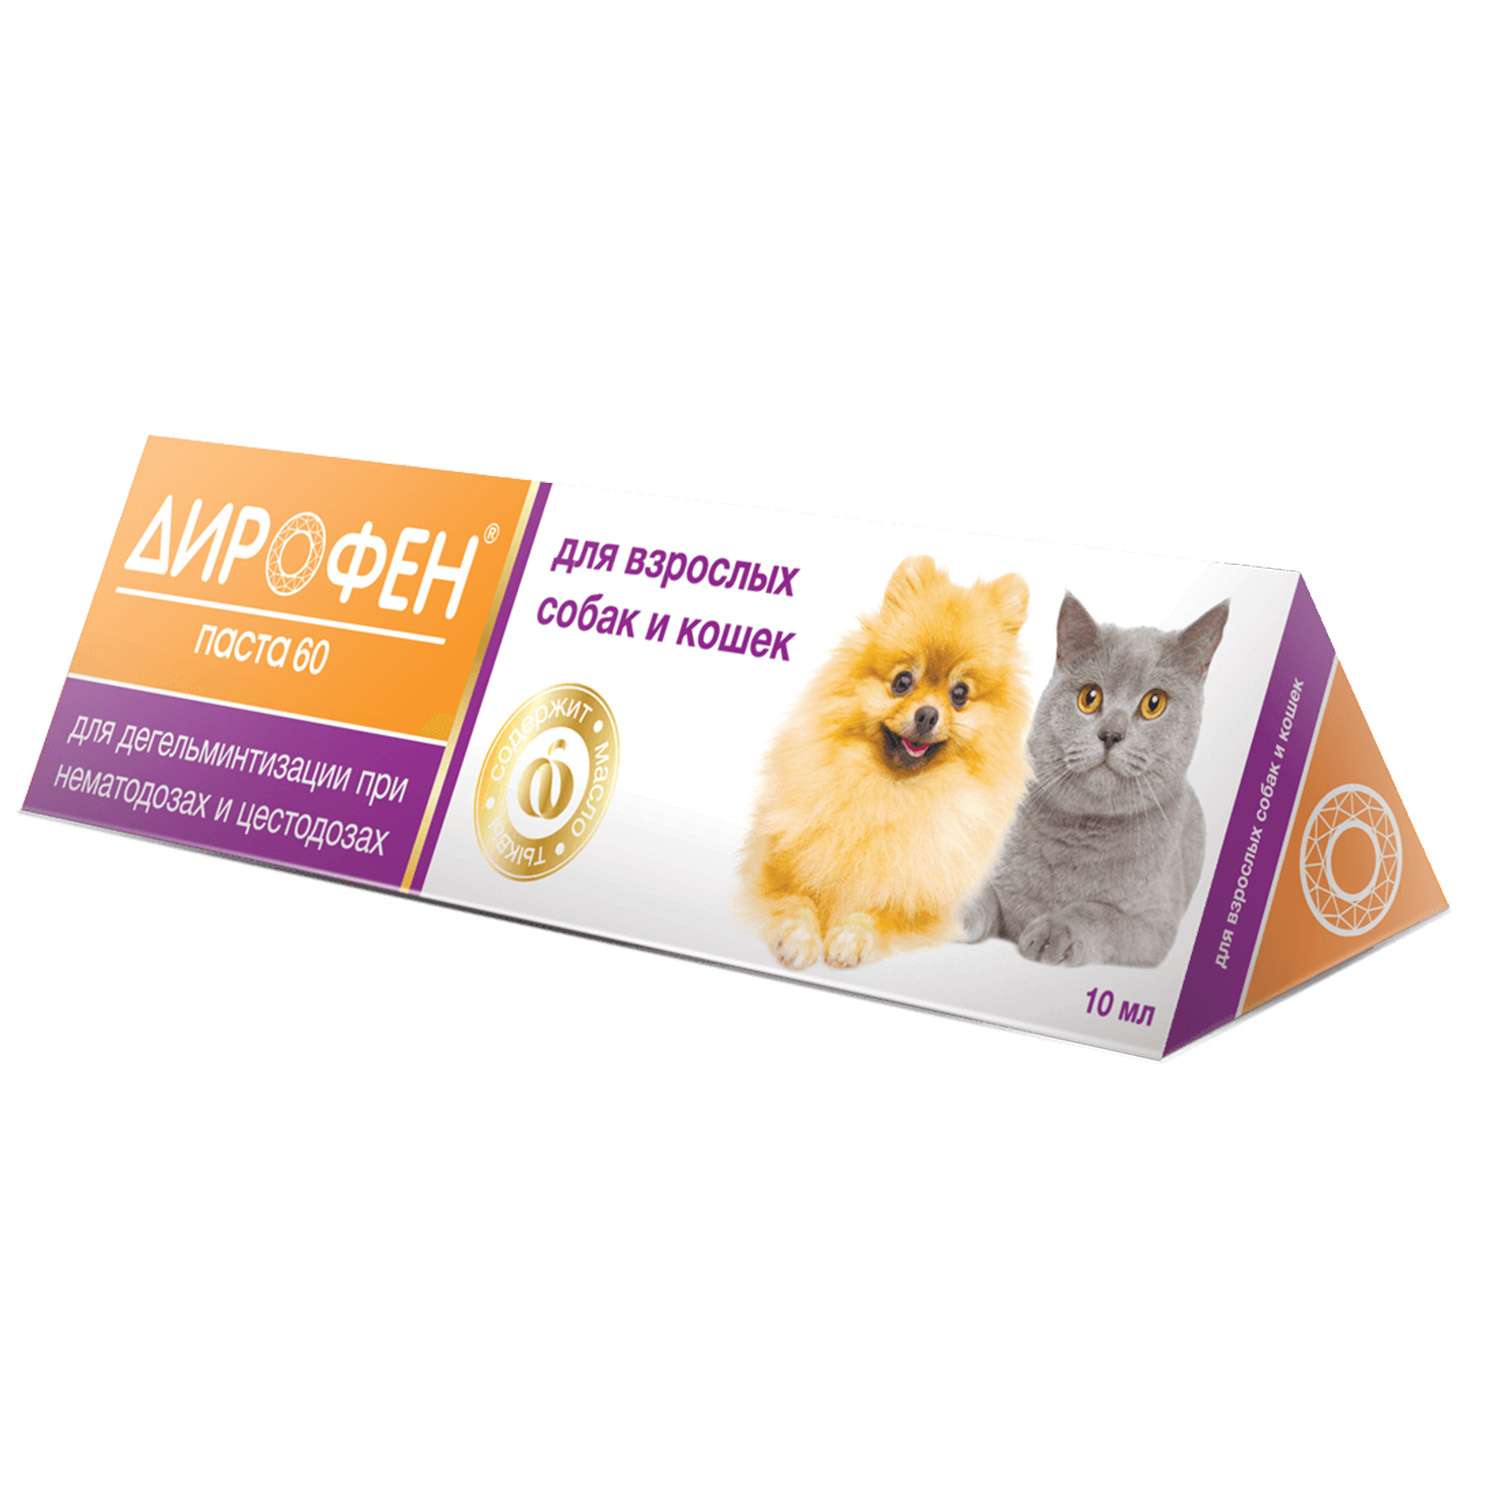 Препарат противопаразитарный для собак и кошек Apicenna Дирофен-паста 60 10мл - фото 1